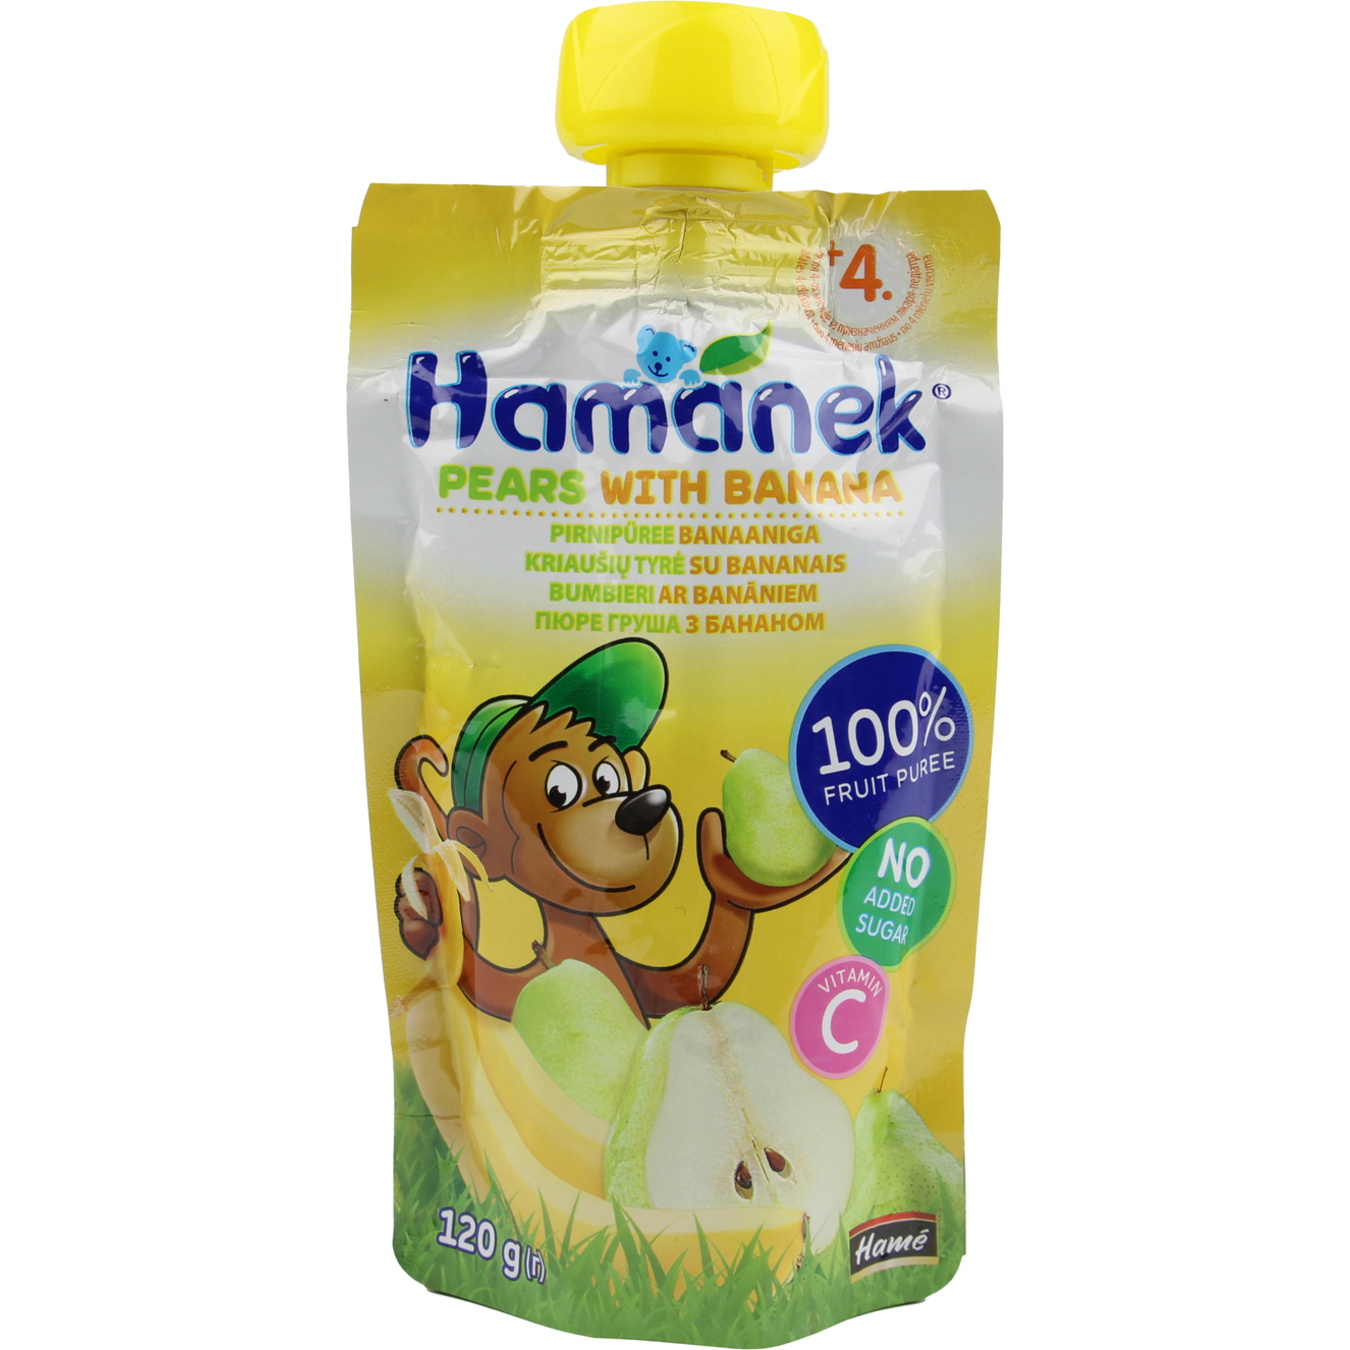 Hamanek Pear with Banana Puree 120g